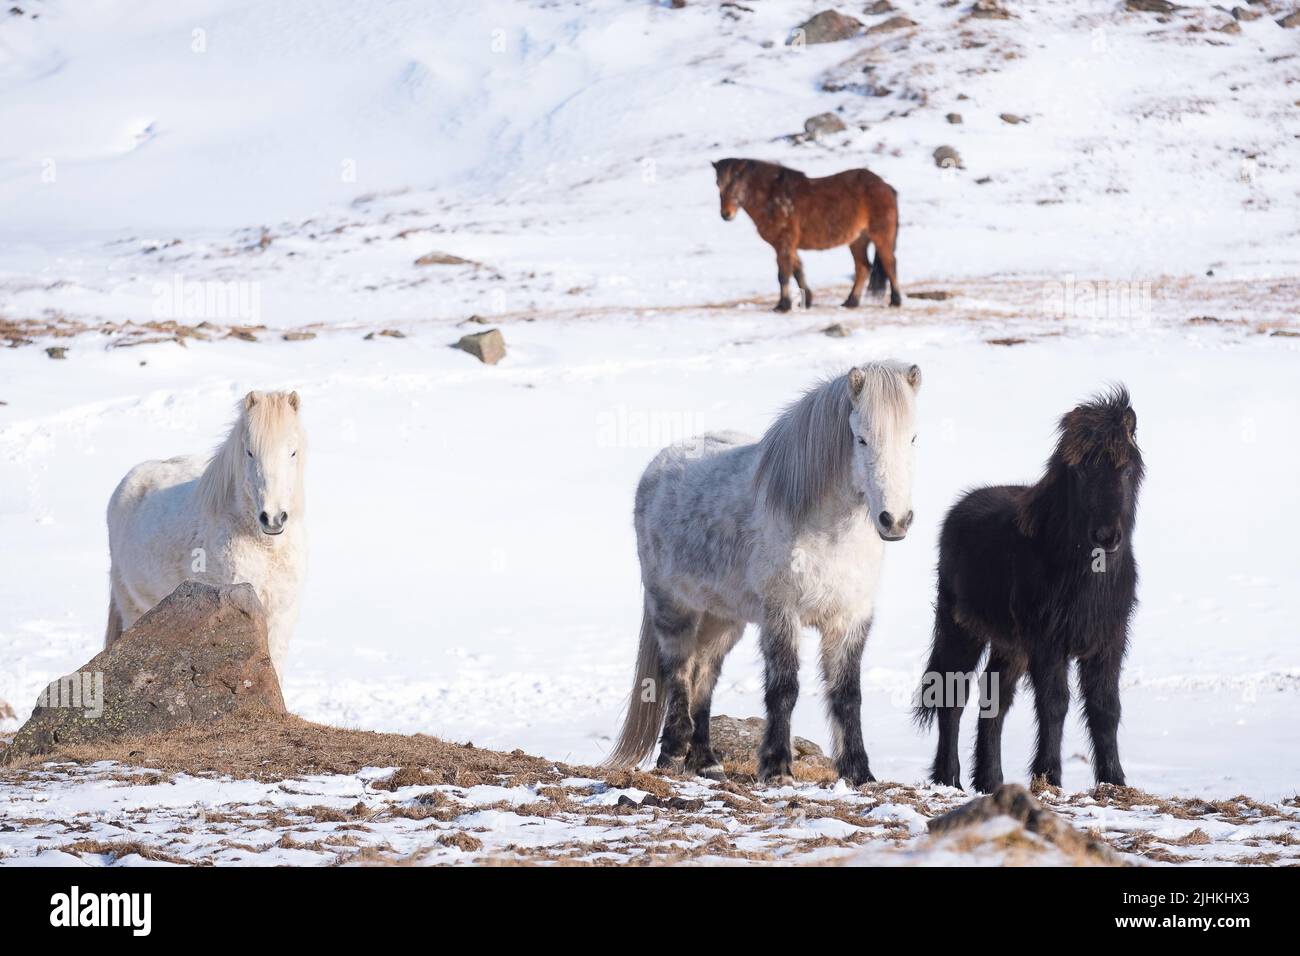 Chevaux islandais en hiver avec de la neige au sol Banque D'Images